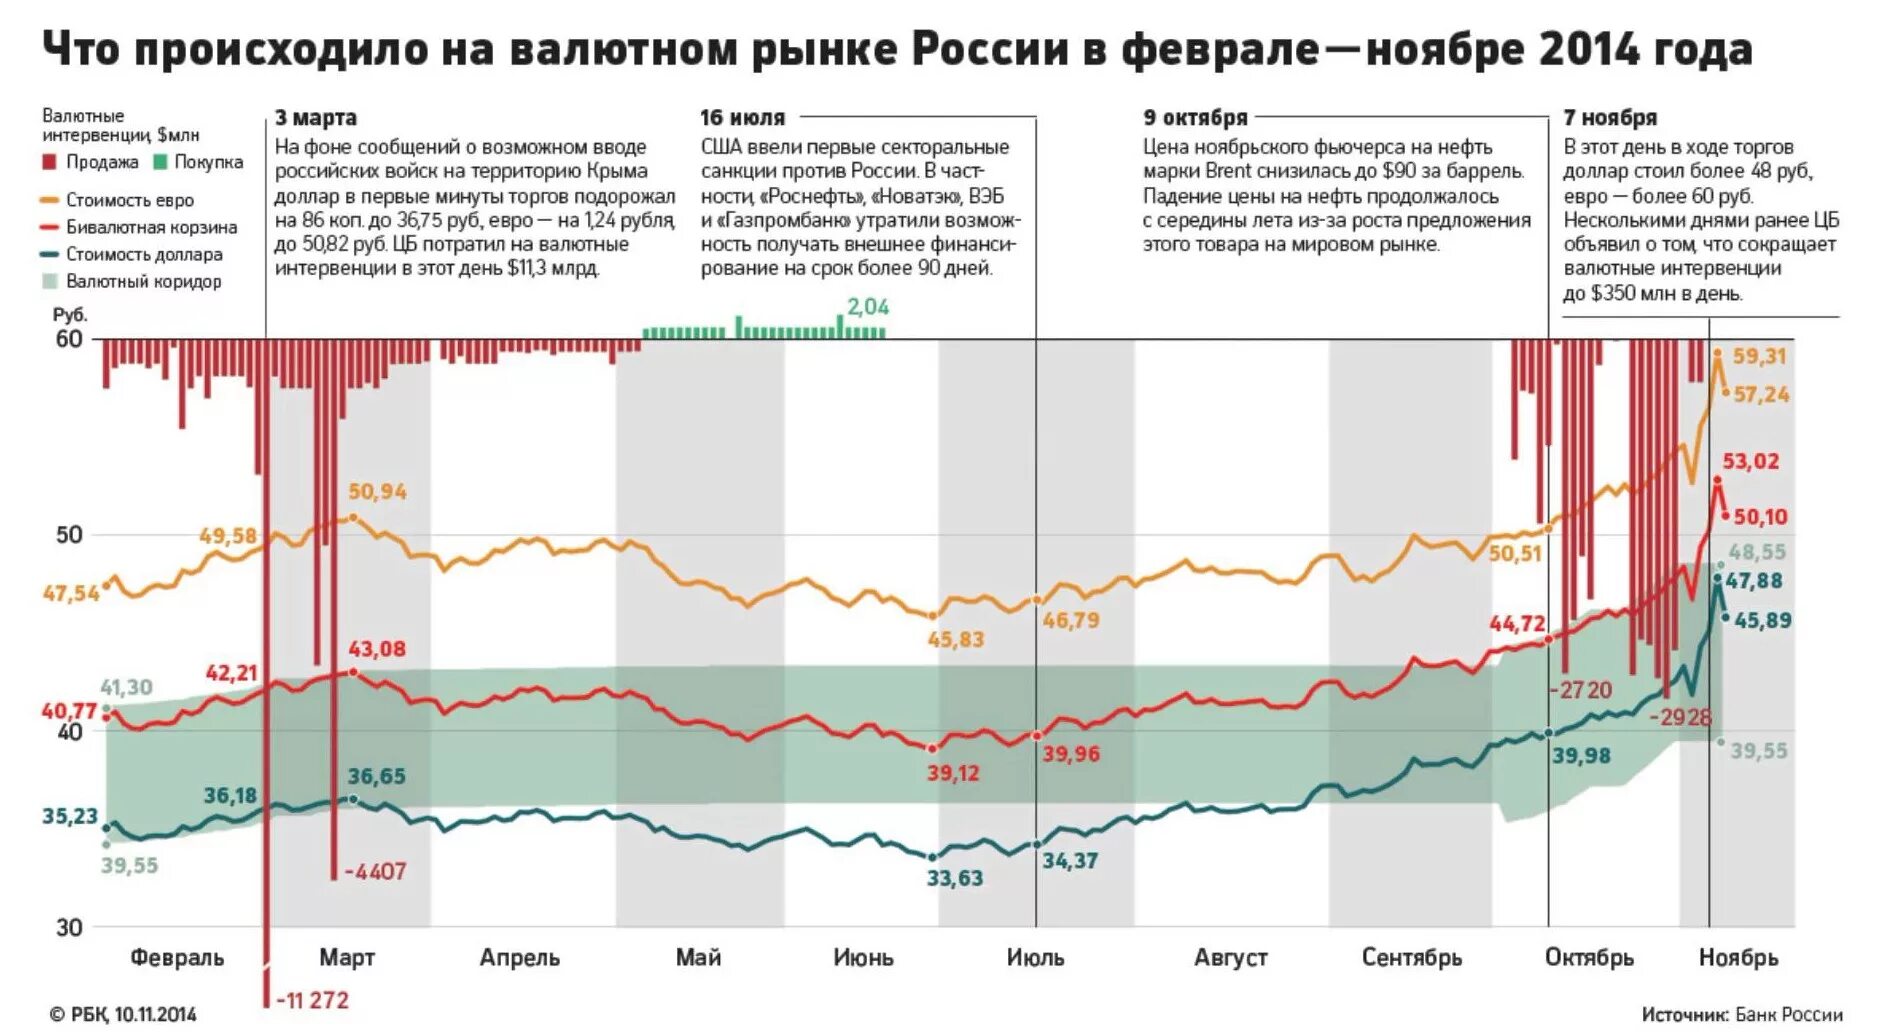 Курс валют. Валютный коридор рубля в 2014. Валютный курс рубля. Банк России на валютном рынке. Влияние иностранной валюты